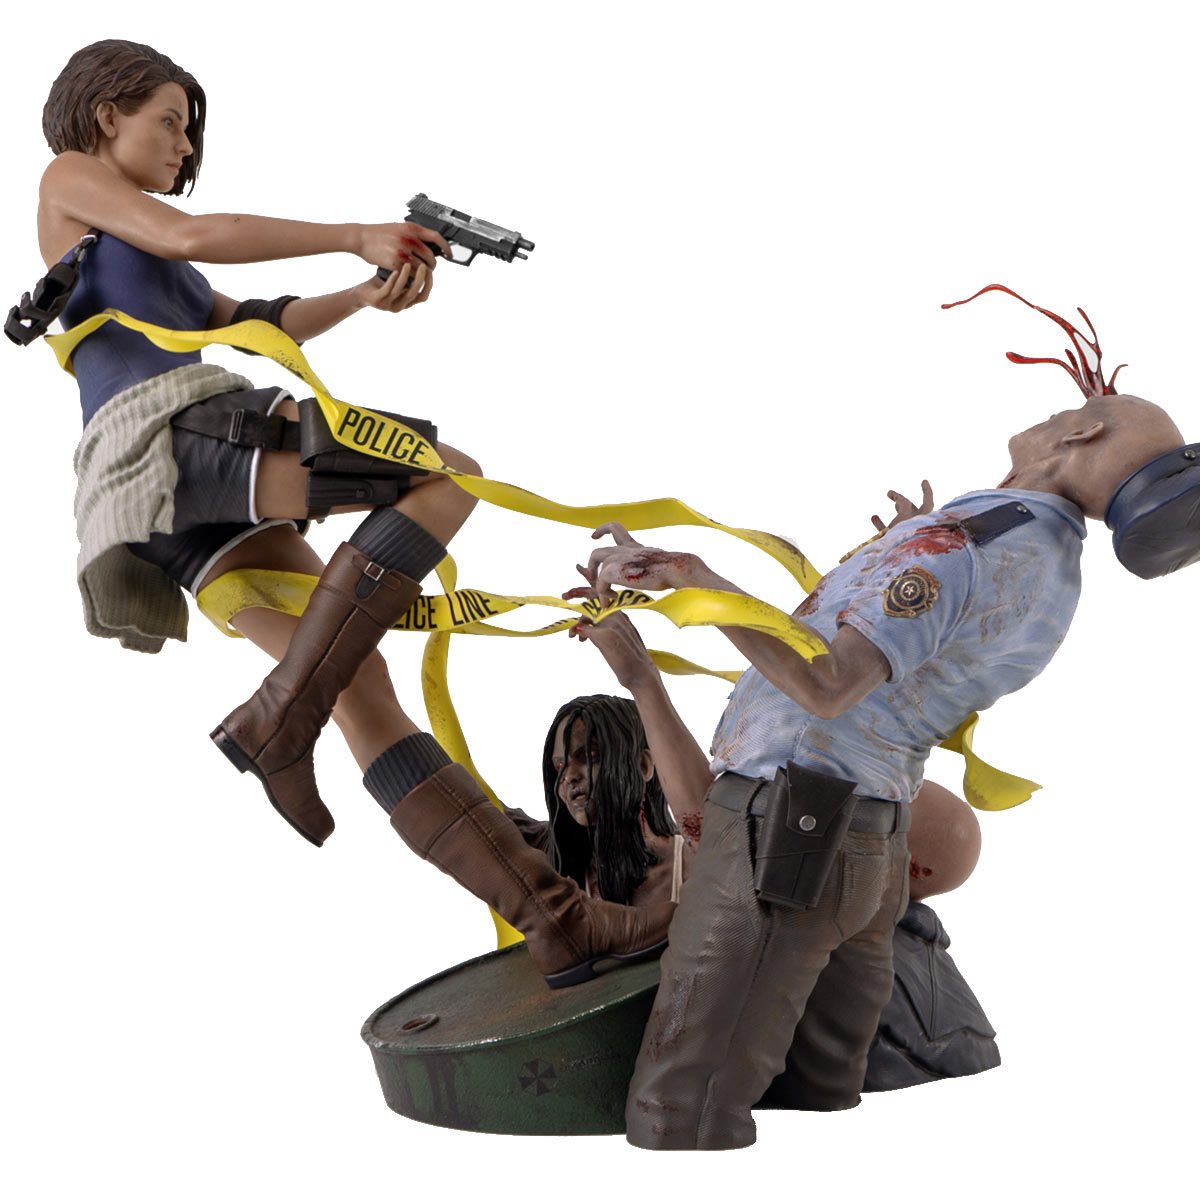 Jill Valentine Statue - Resident Evil 3 3D model 3D printable